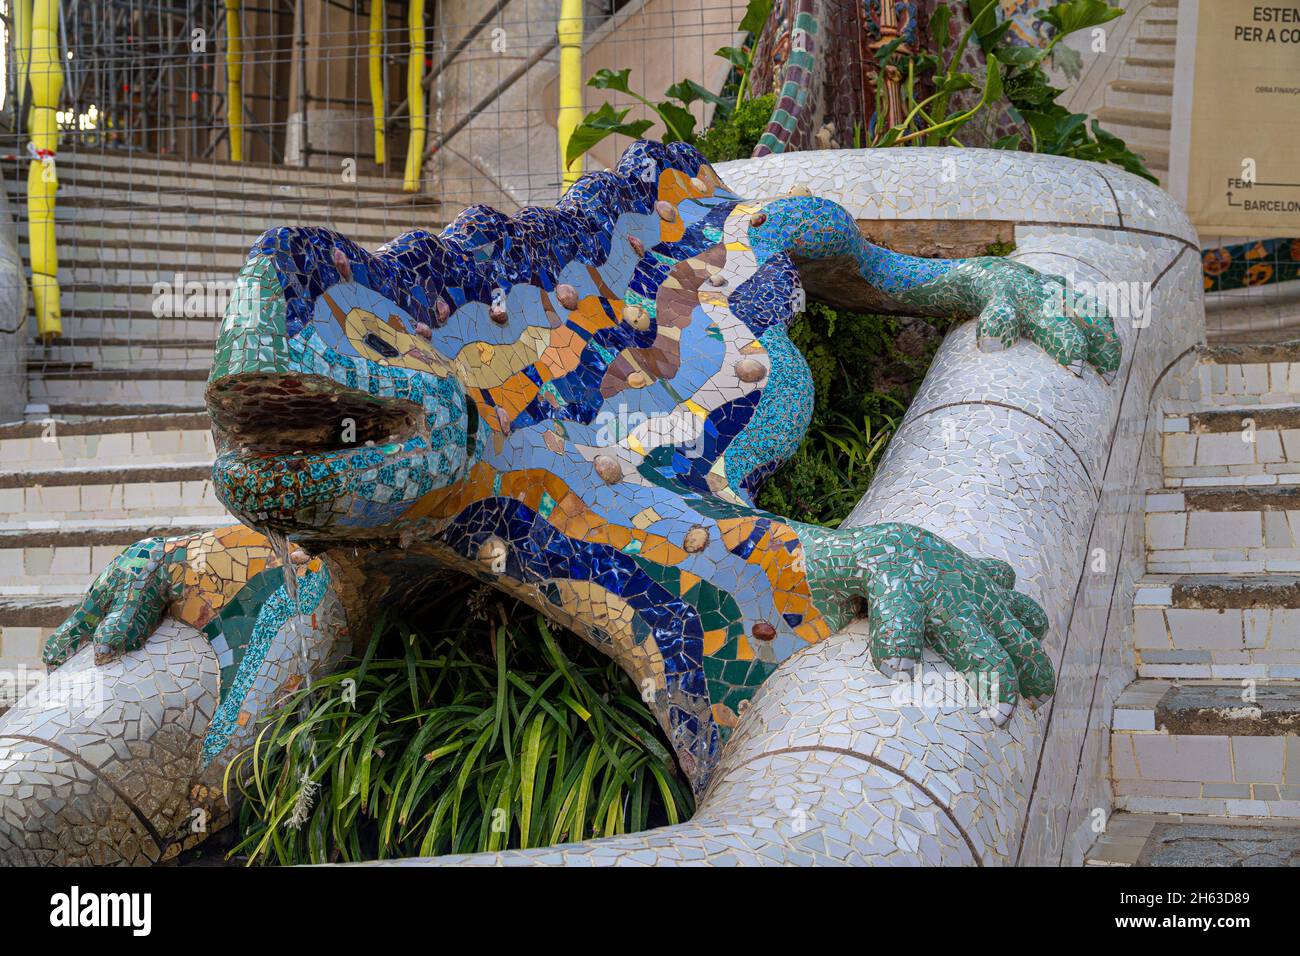 la lucertola a mosaico nel parco artistico guell di antoni gaudí a barcellona, in spagna, questo parco modernistico è stato costruito tra il 1900 e il 1914 ed è una popolare attrazione turistica. Foto Stock